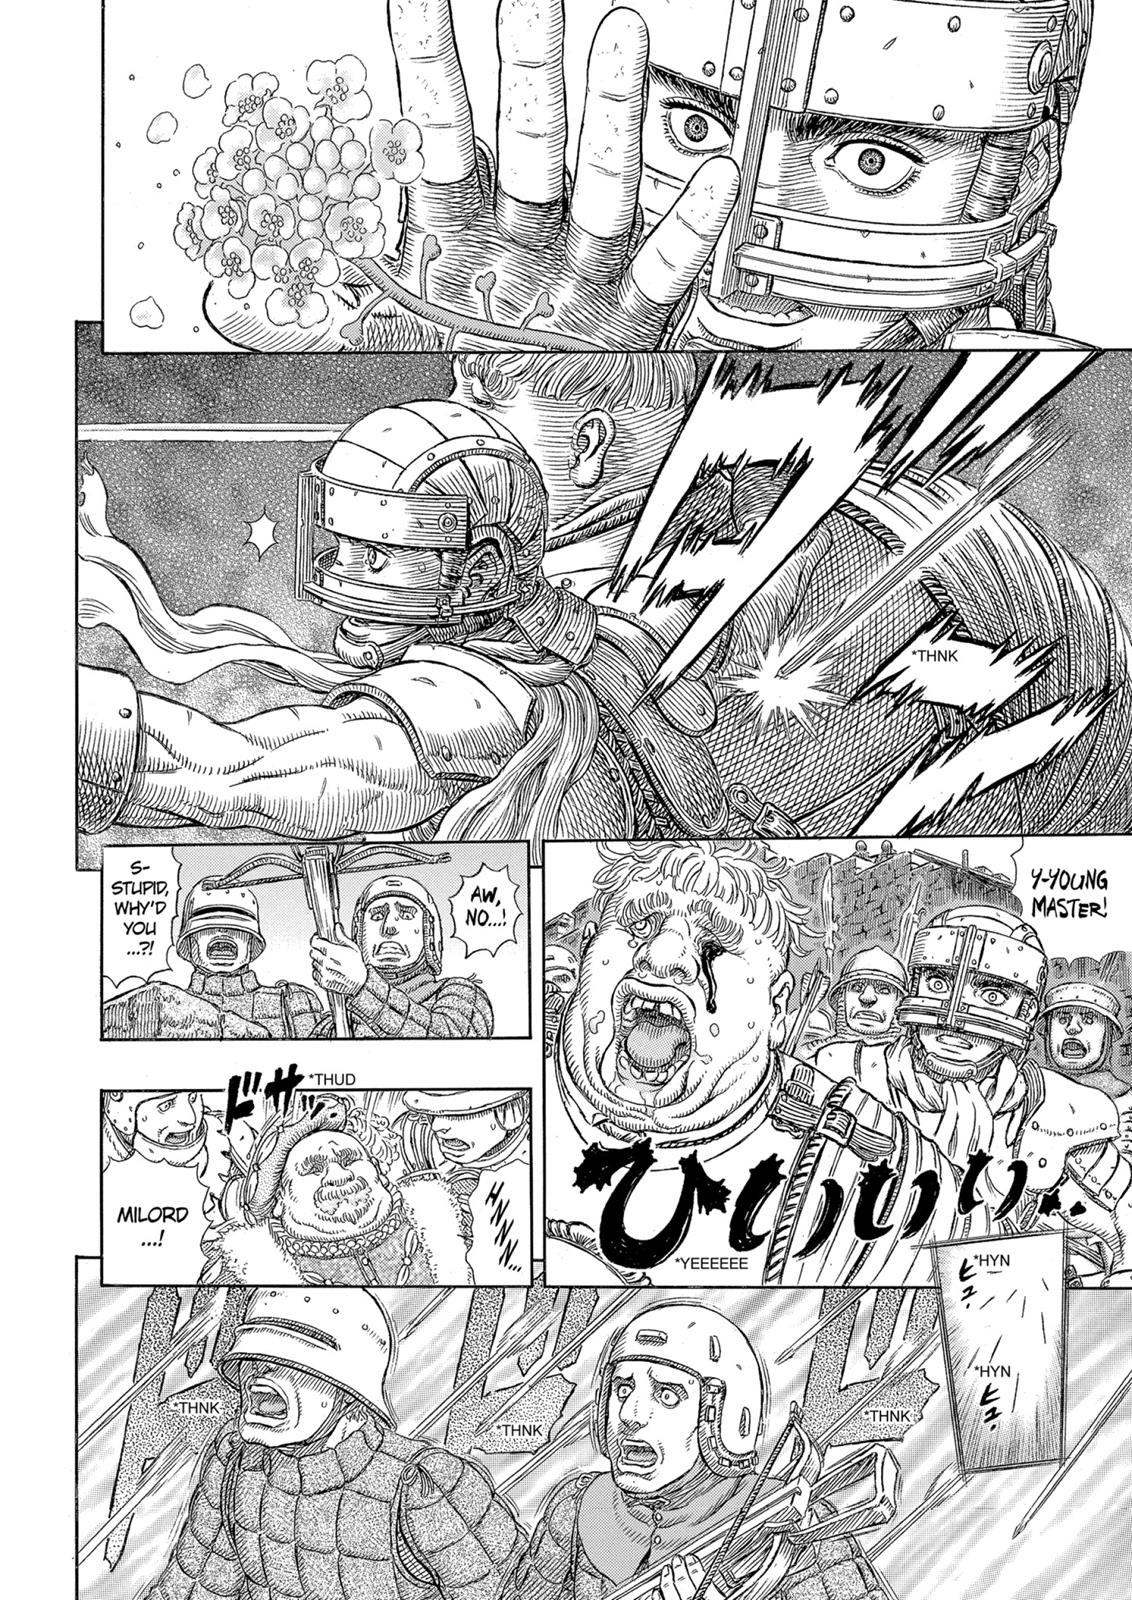 Berserk Manga Chapter 331 image 17